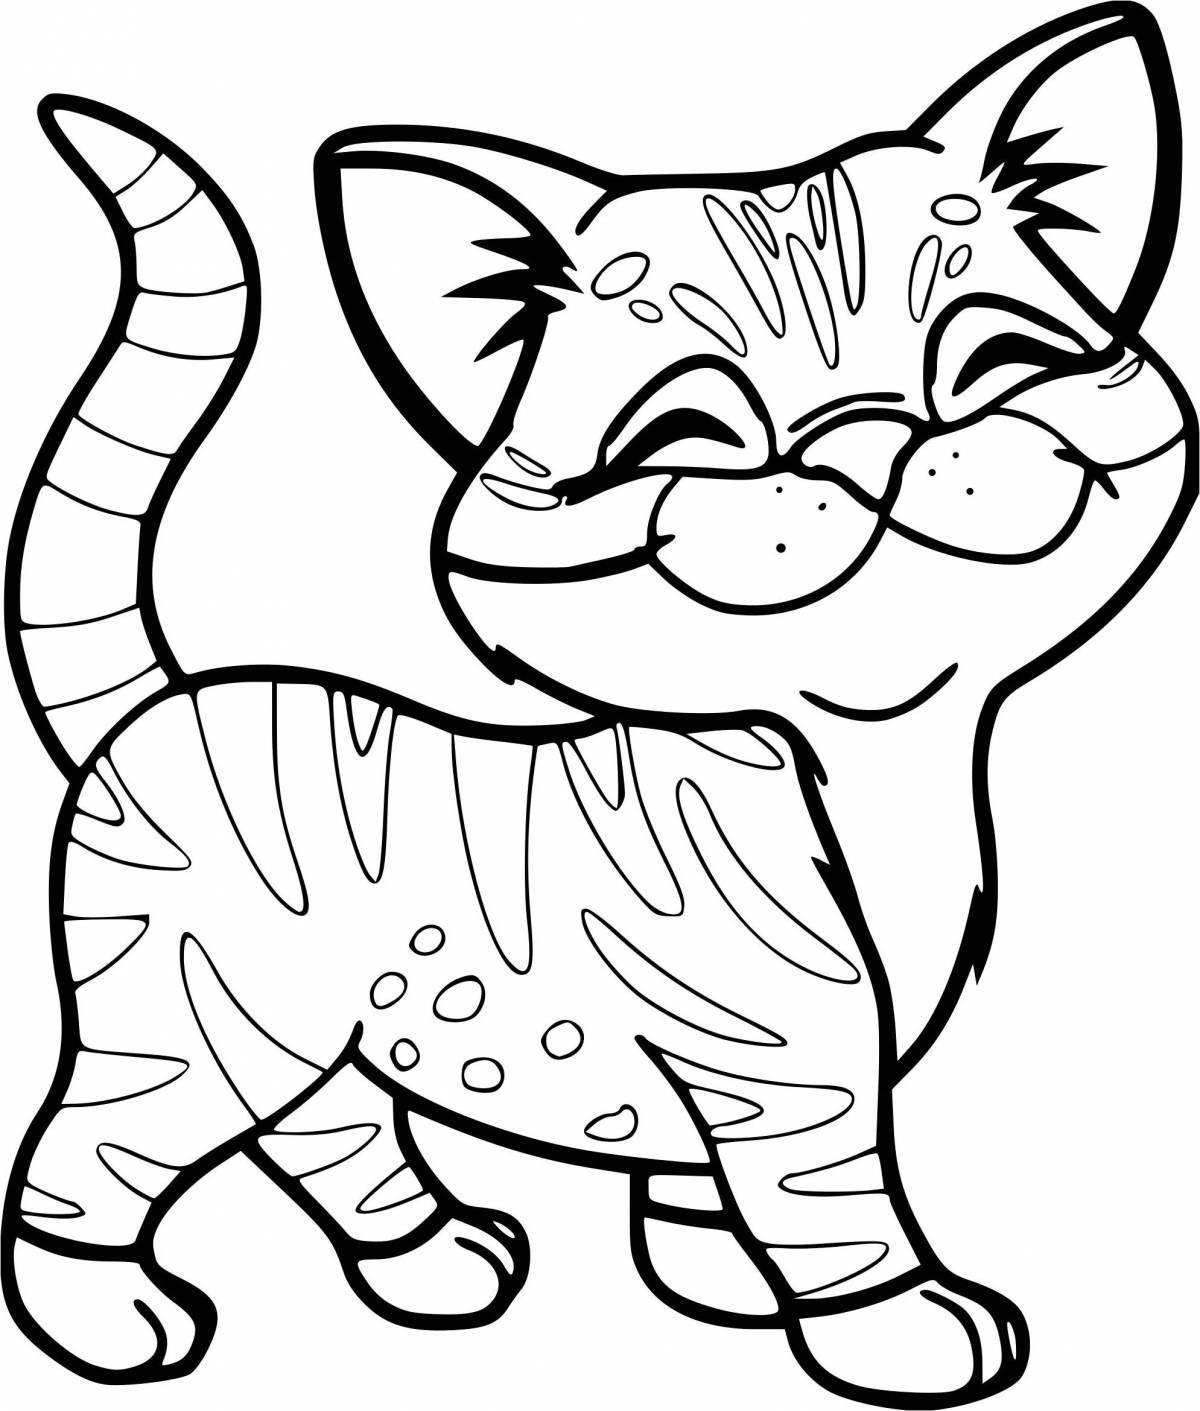 Joyful coloring cat kubokot